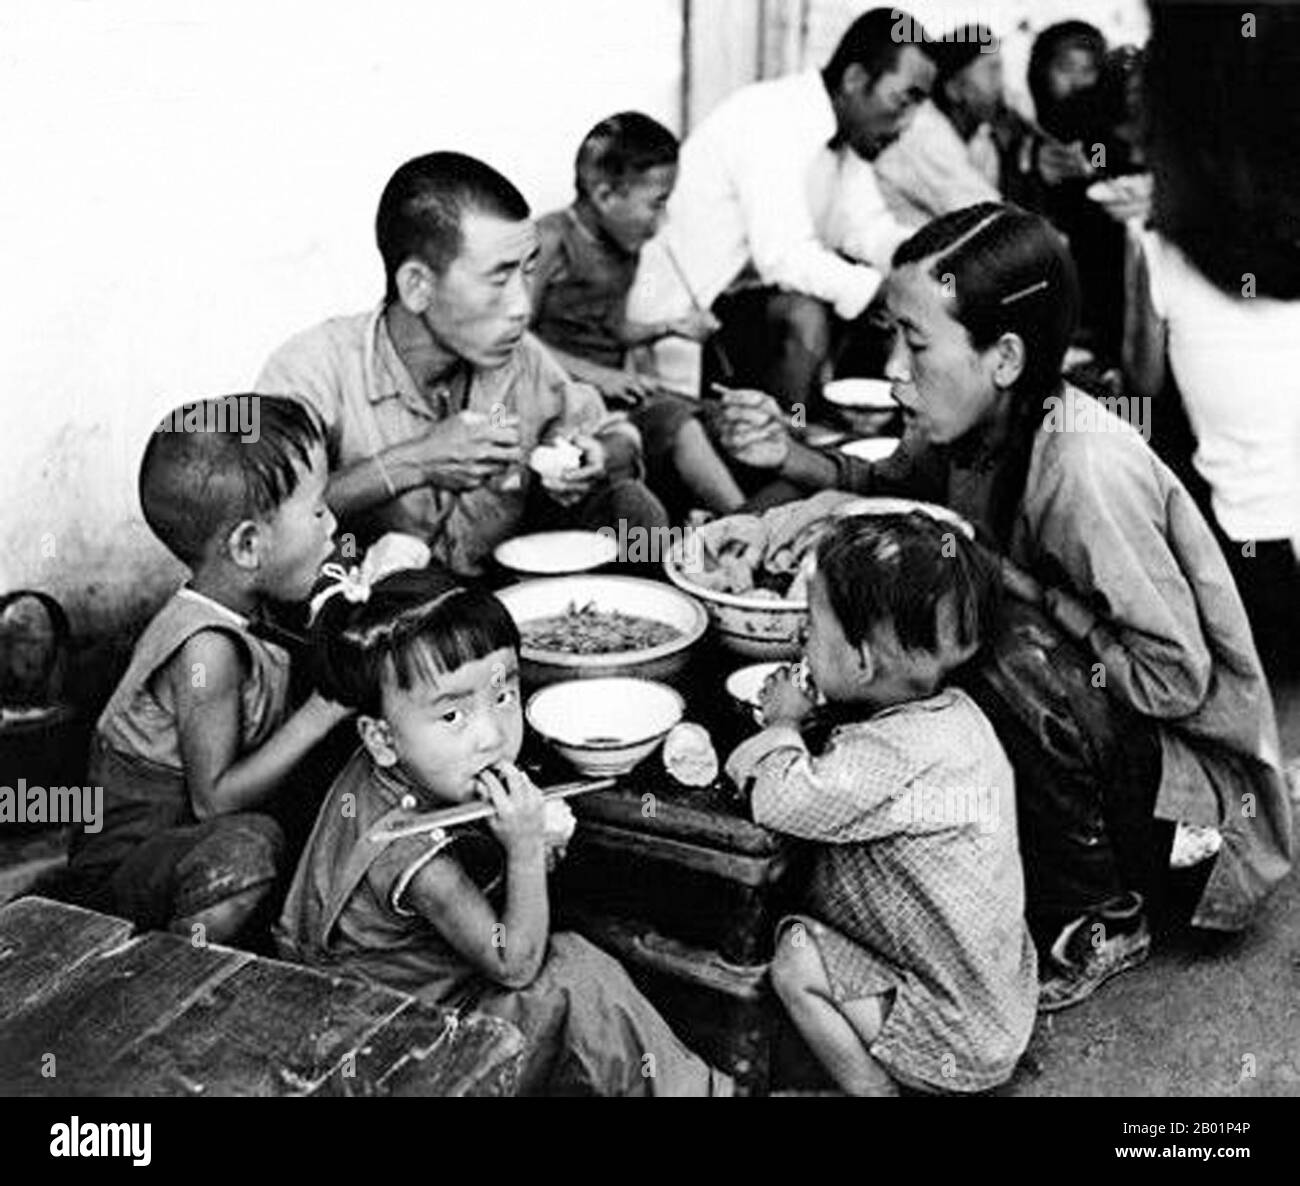 China: Bauernfamilien essen während des Großen Vorwärtssprungs (1958–1961) in einer Gemeinde. Der große Sprung nach vorne in der Volksrepublik China (VR China) war eine wirtschaftliche und soziale Kampagne der Kommunistischen Partei Chinas (KPC), die sich in Planungsentscheidungen von 1958 bis 1961 widerspiegelte. die darauf abzielte, Chinas riesige Bevölkerung zu nutzen, um das Land durch den Prozess der raschen Industrialisierung und Kollektivierung rasch von einer Agrarwirtschaft in eine moderne kommunistische Gesellschaft zu verwandeln. Mao Zedong leitete die Kampagne auf der Grundlage der Theorie der produktiven Kräfte. Stockfoto